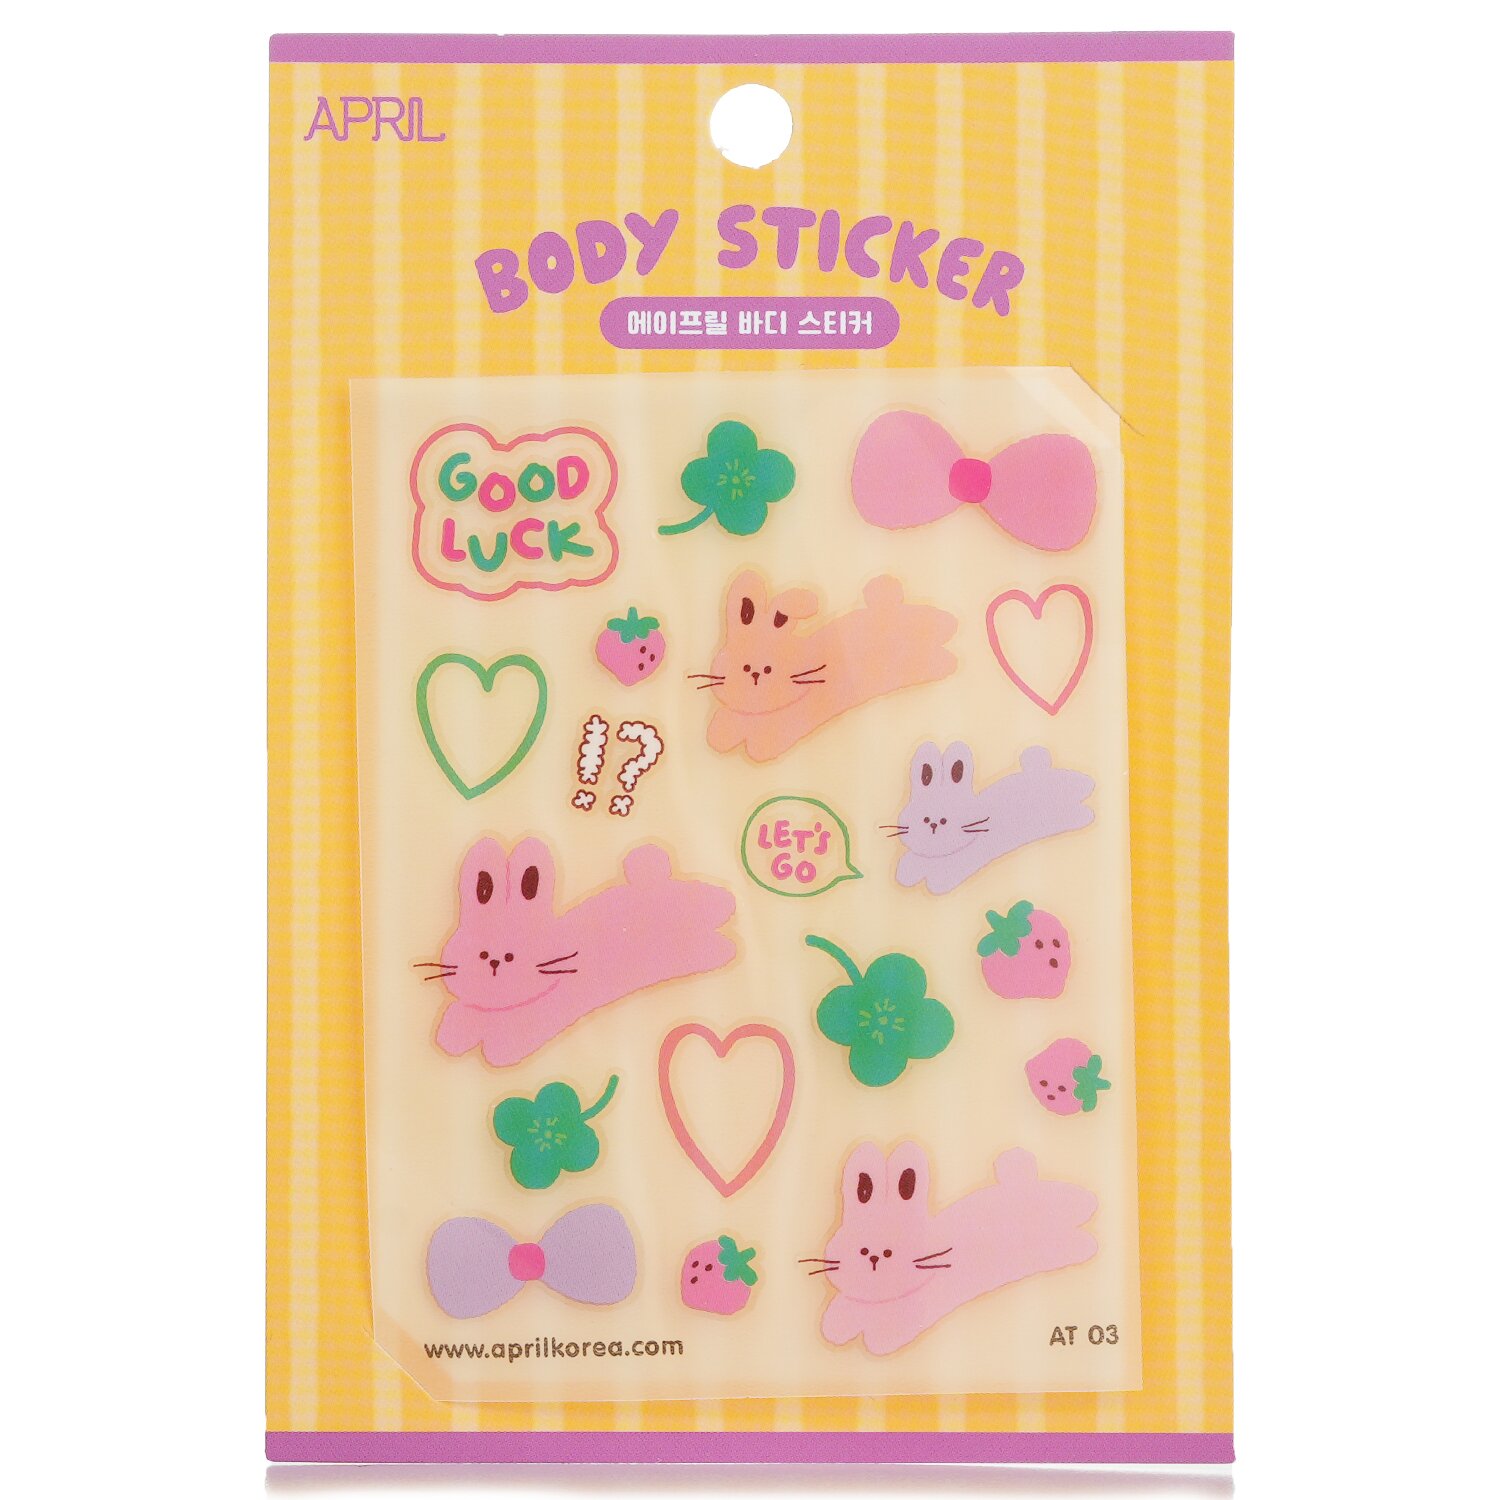 April Korea April Body Sticker 1pc